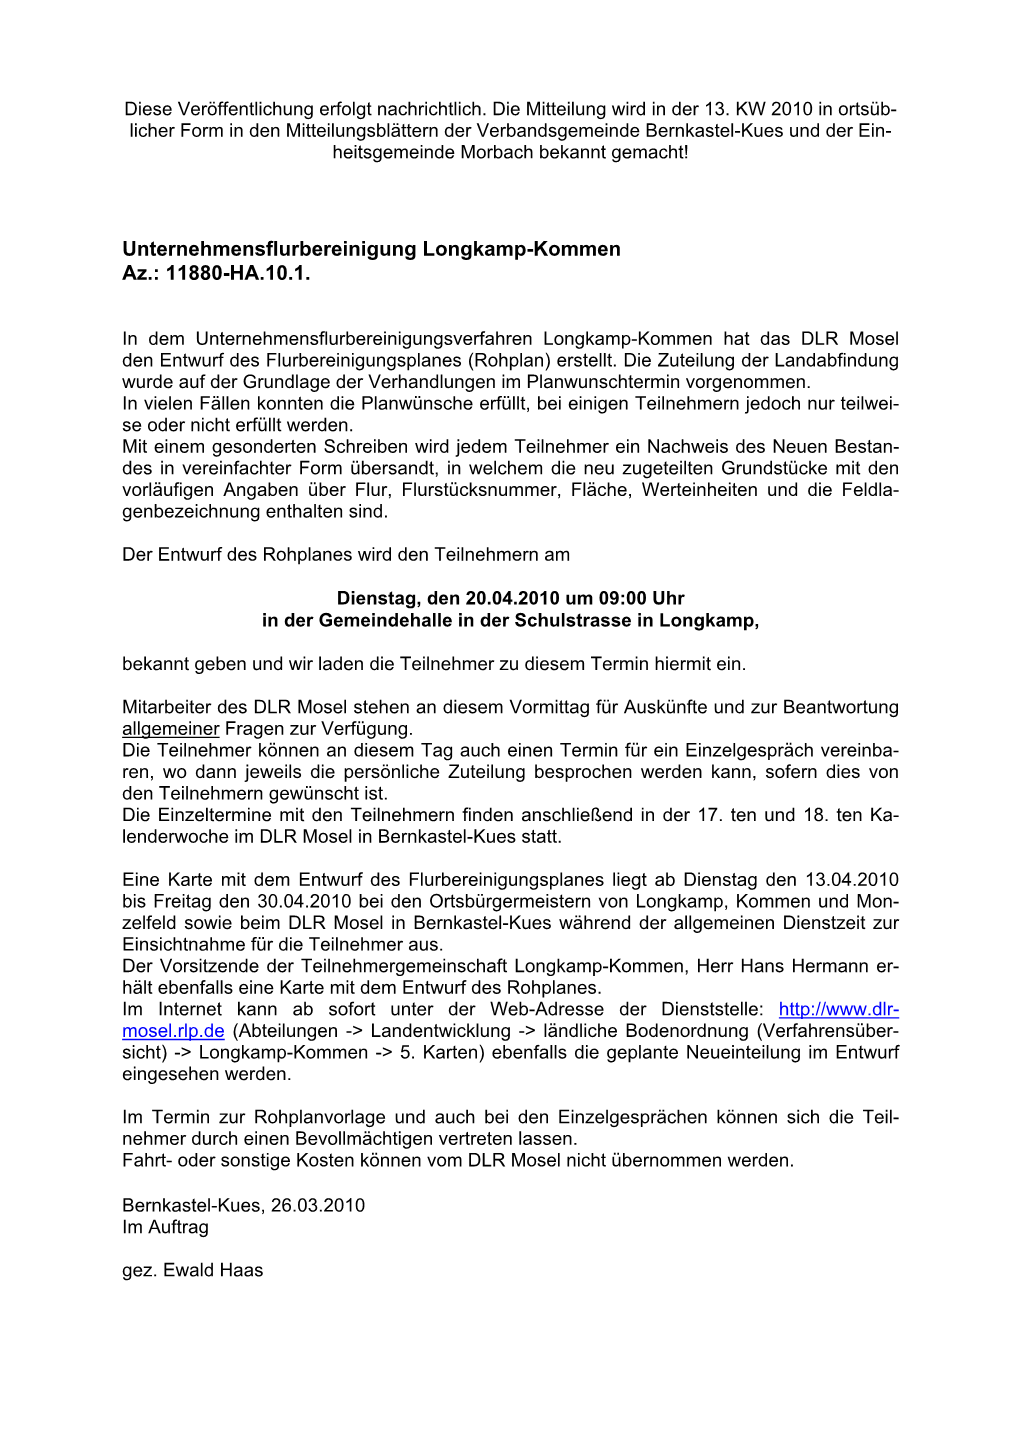 Unternehmensflurbereinigung Longkamp-Kommen Az.: 11880-HA.10.1